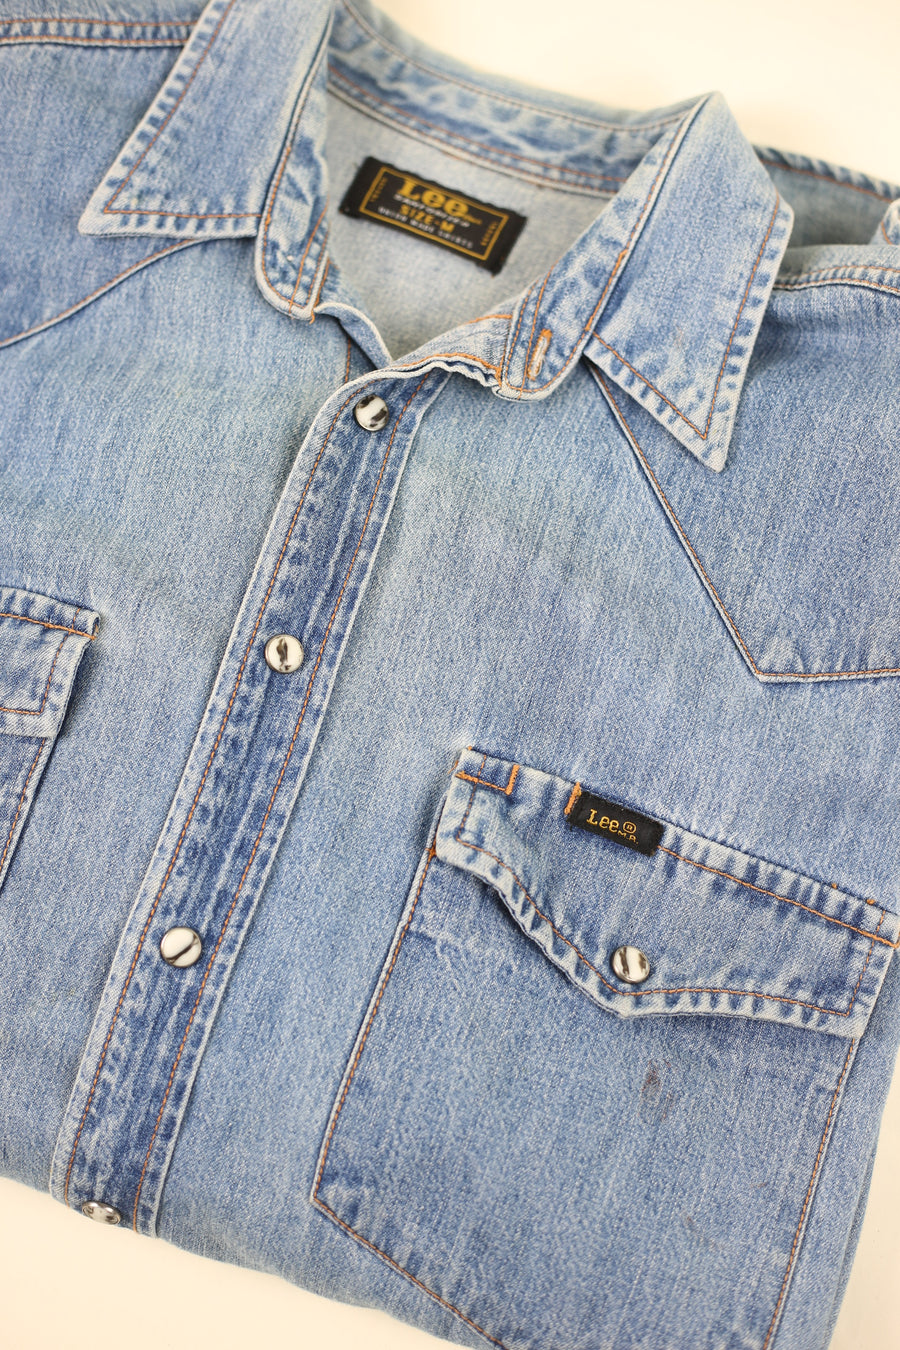 Camicia di jeans  vintage LEE -  L -